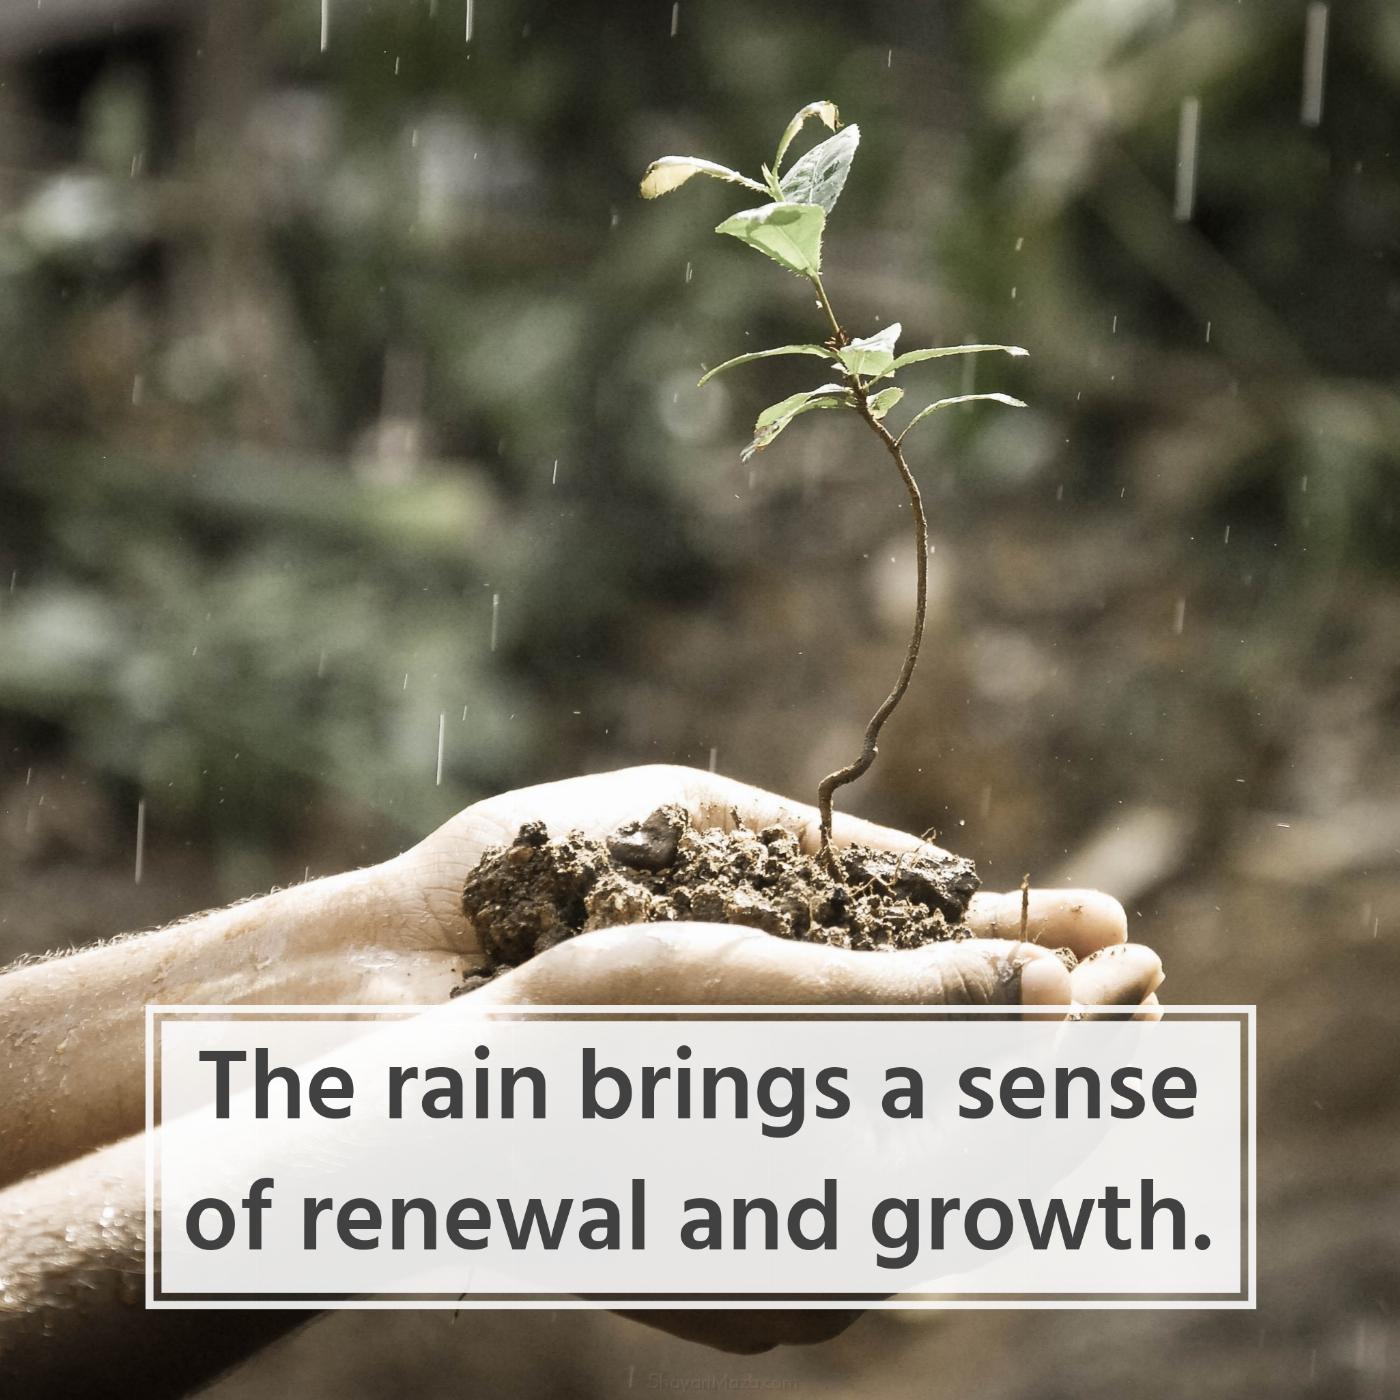 The rain brings a sense of renewal and growth